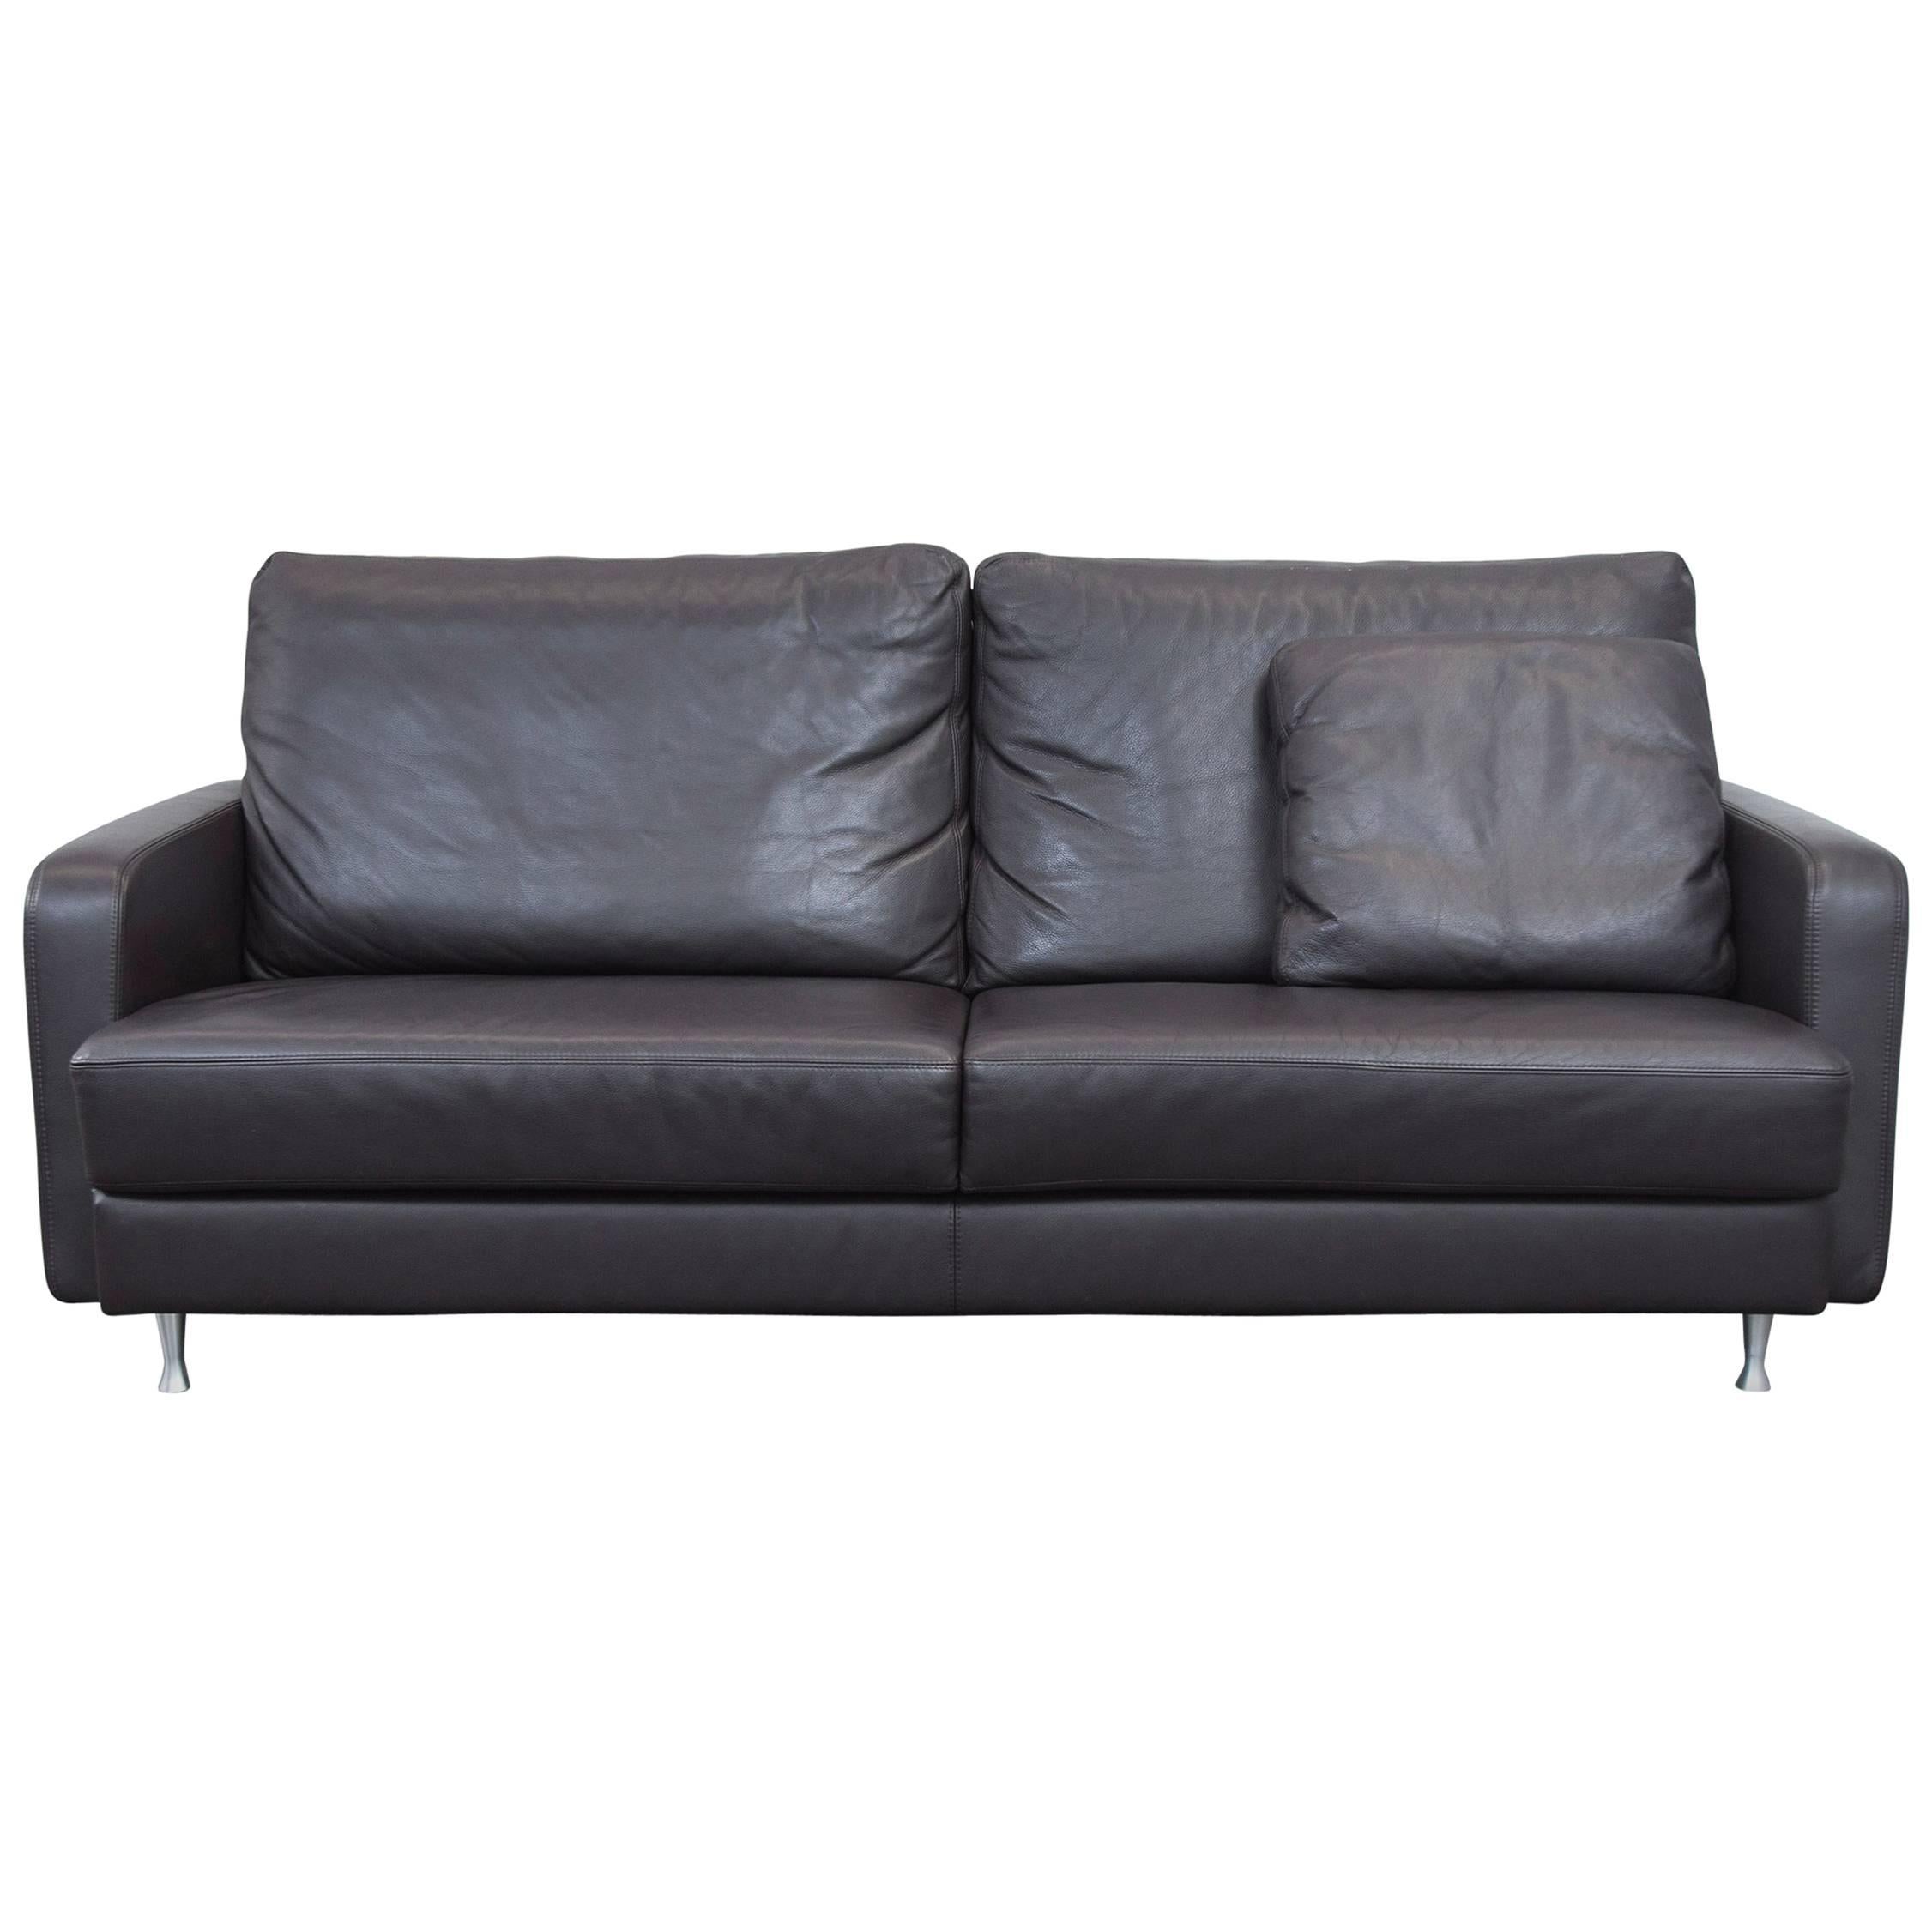 Ewald Schillig Designer Sofa Brown Leather Three-Seat Couch, Modern